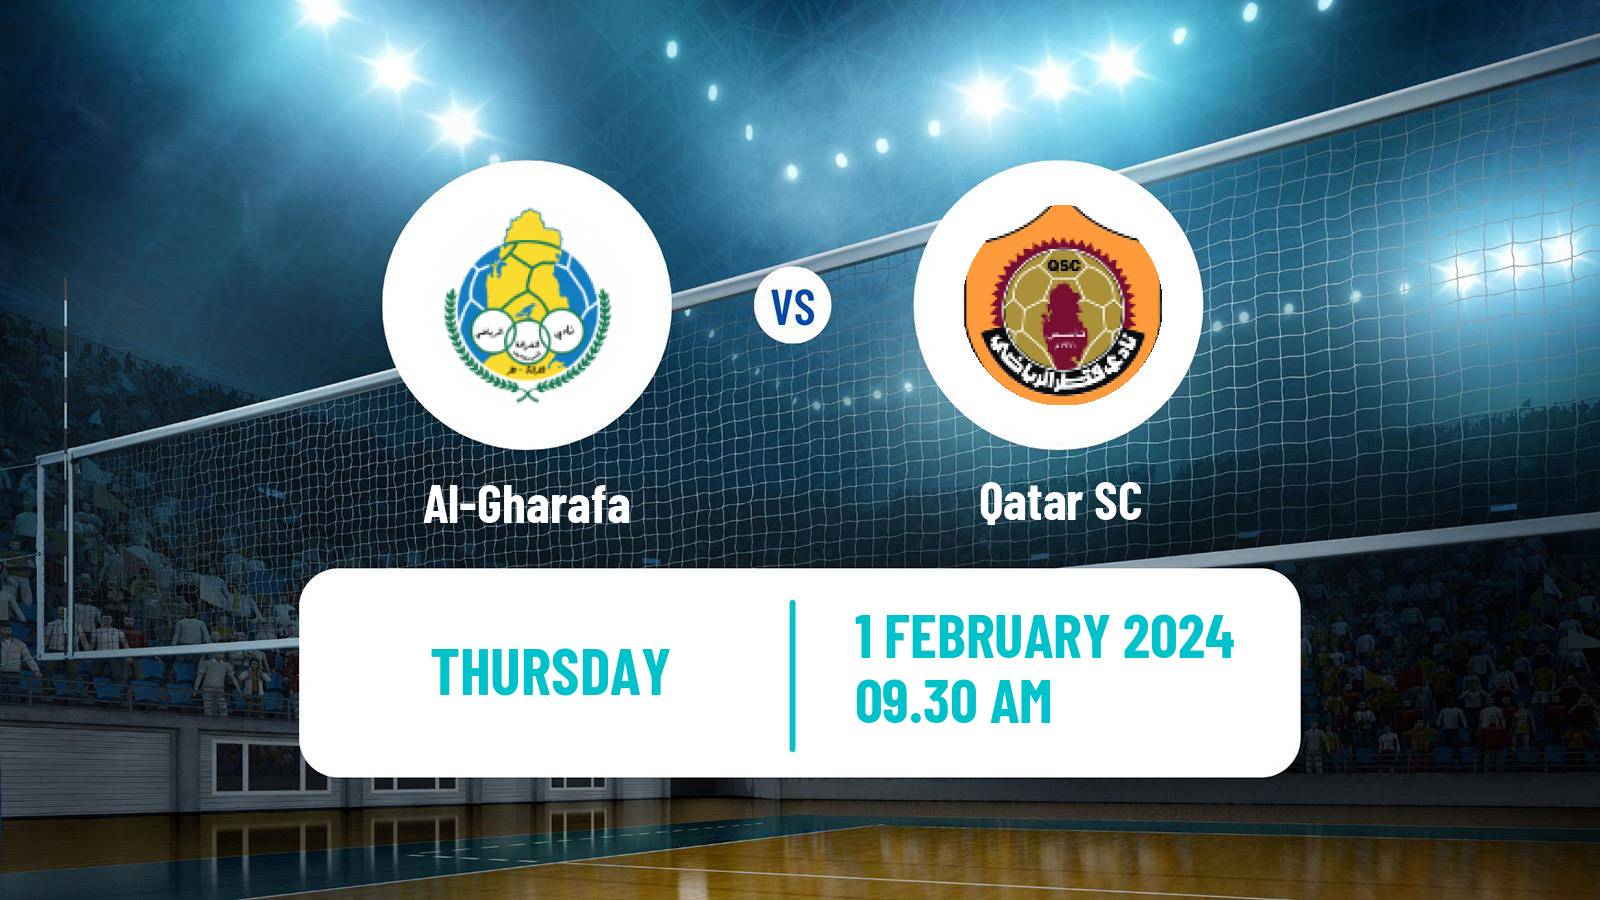 Volleyball Qatar Volleyball League Al-Gharafa - Qatar SC